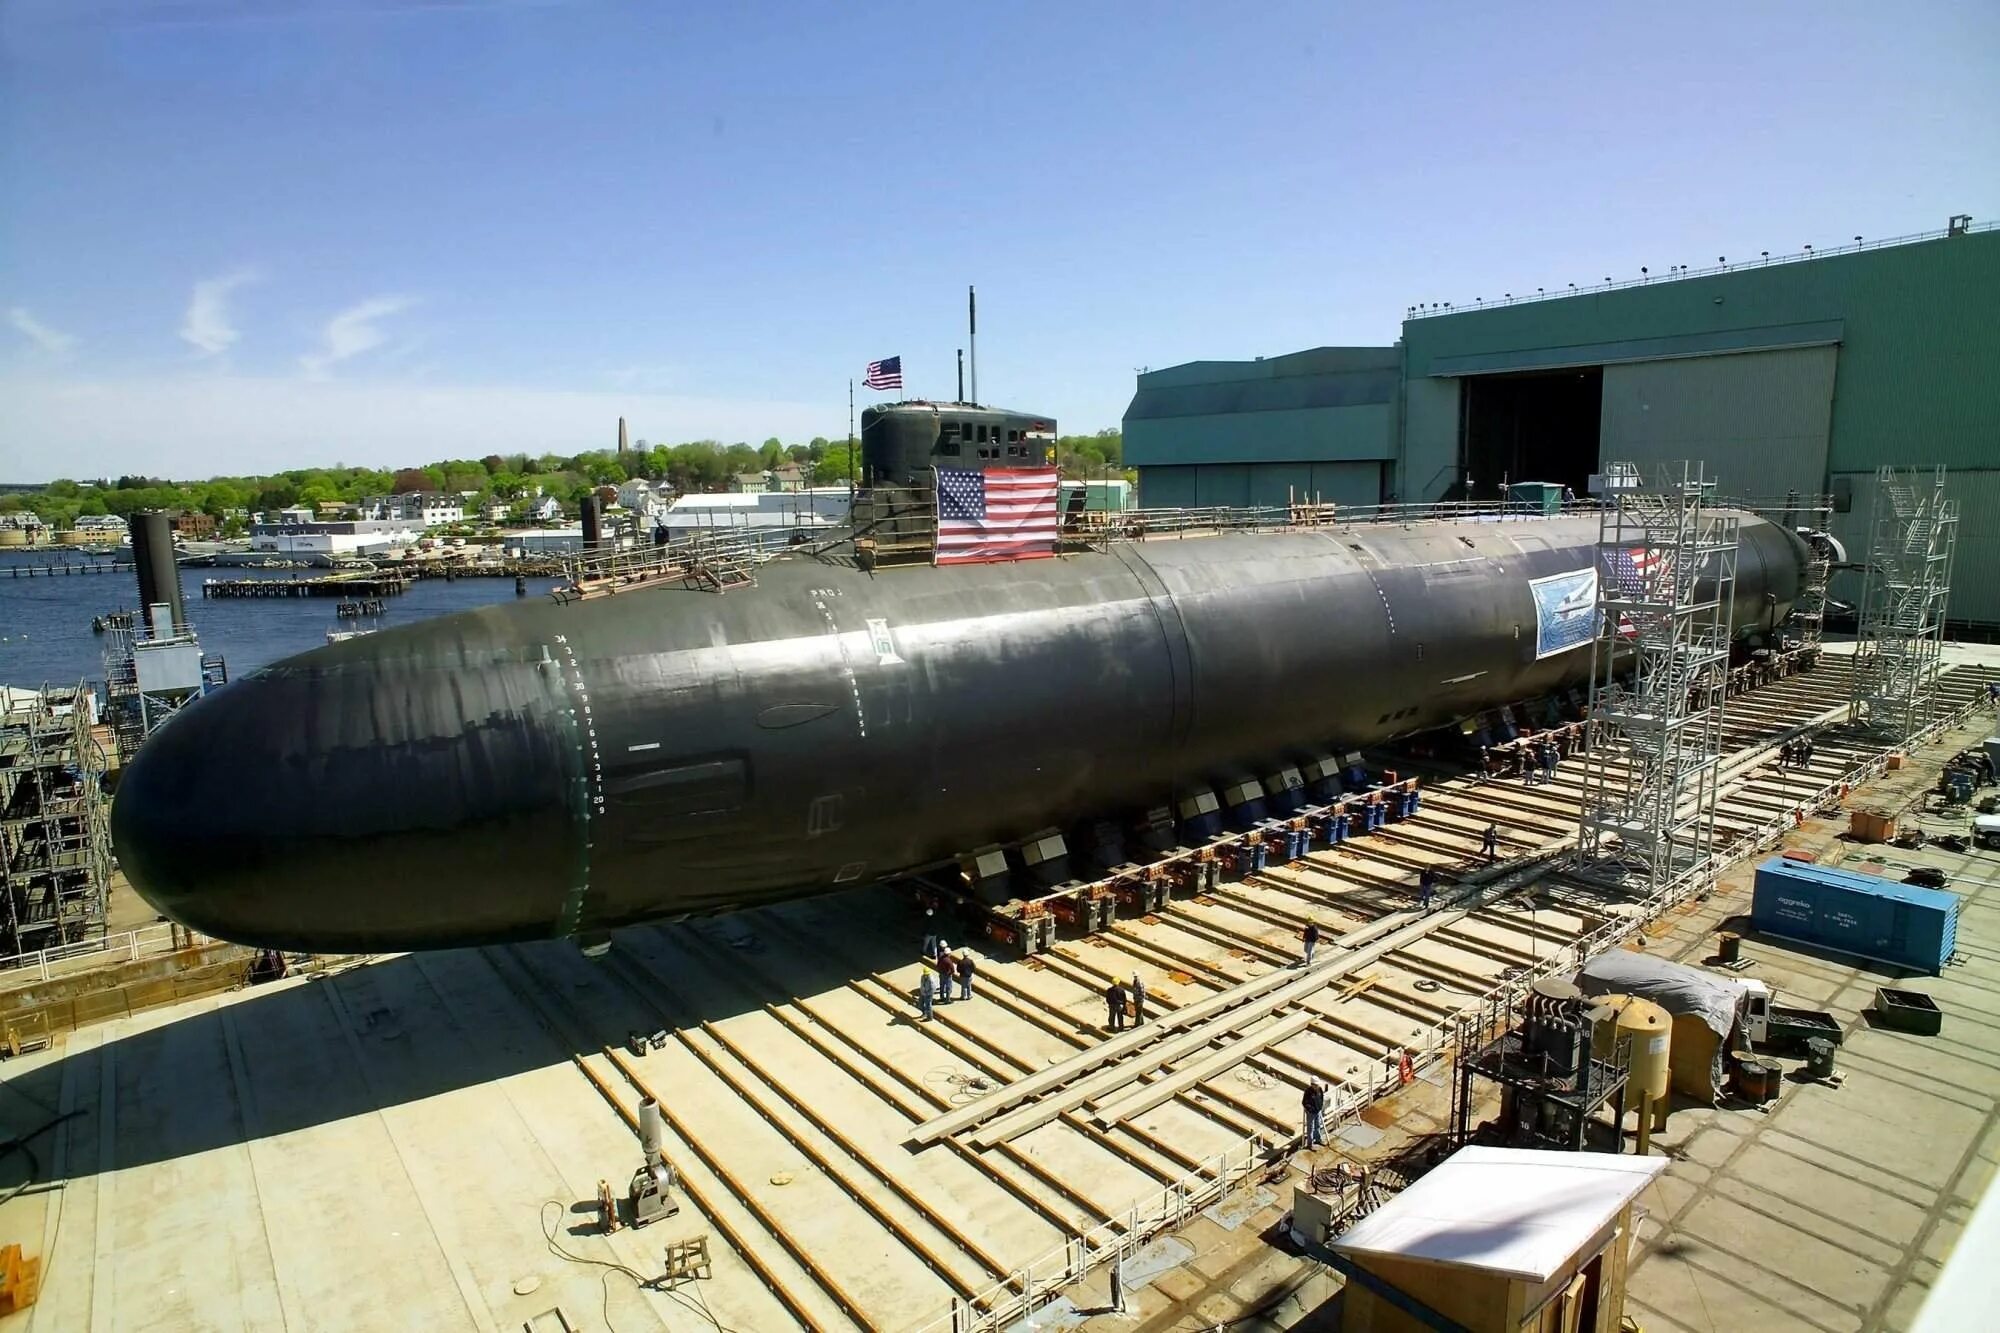 New sub. Сивулф подводная лодка. USS Jimmy Carter (SSN-23). АПЛ США Сивулф. Американская лодка Сивулф Seawolf (SSN-575).